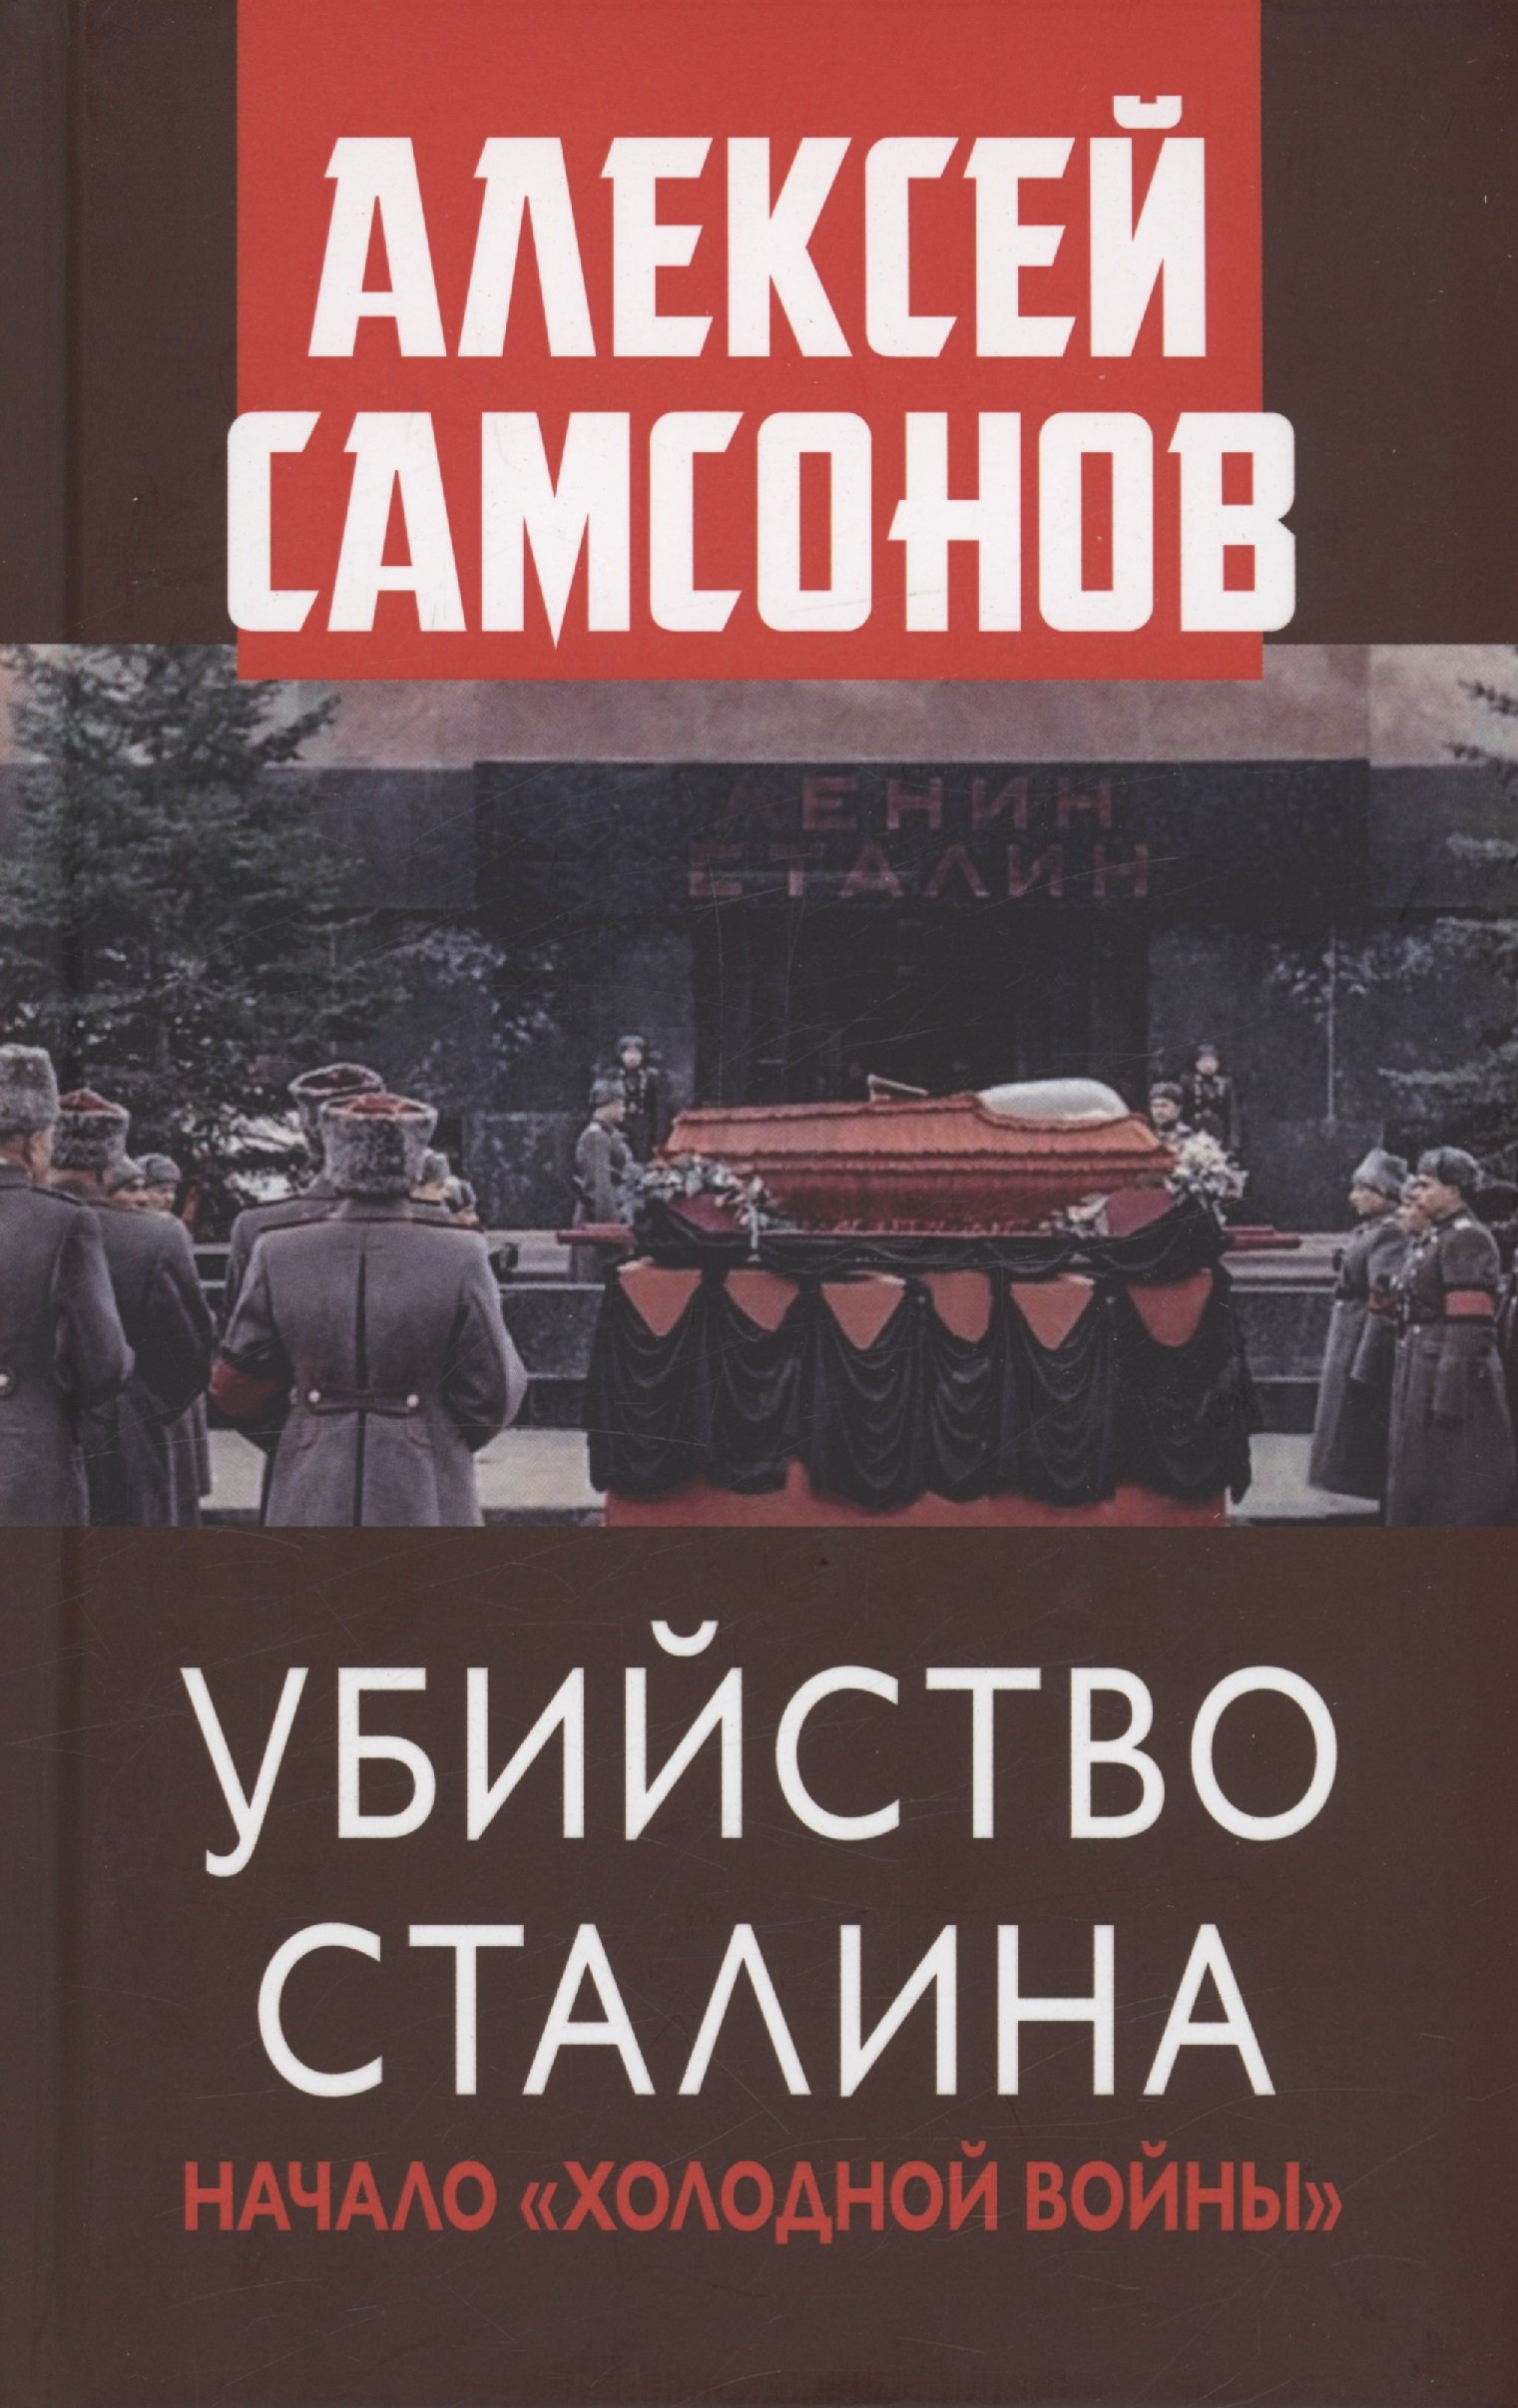 Убийство Сталина. Начало "Холодной войны"